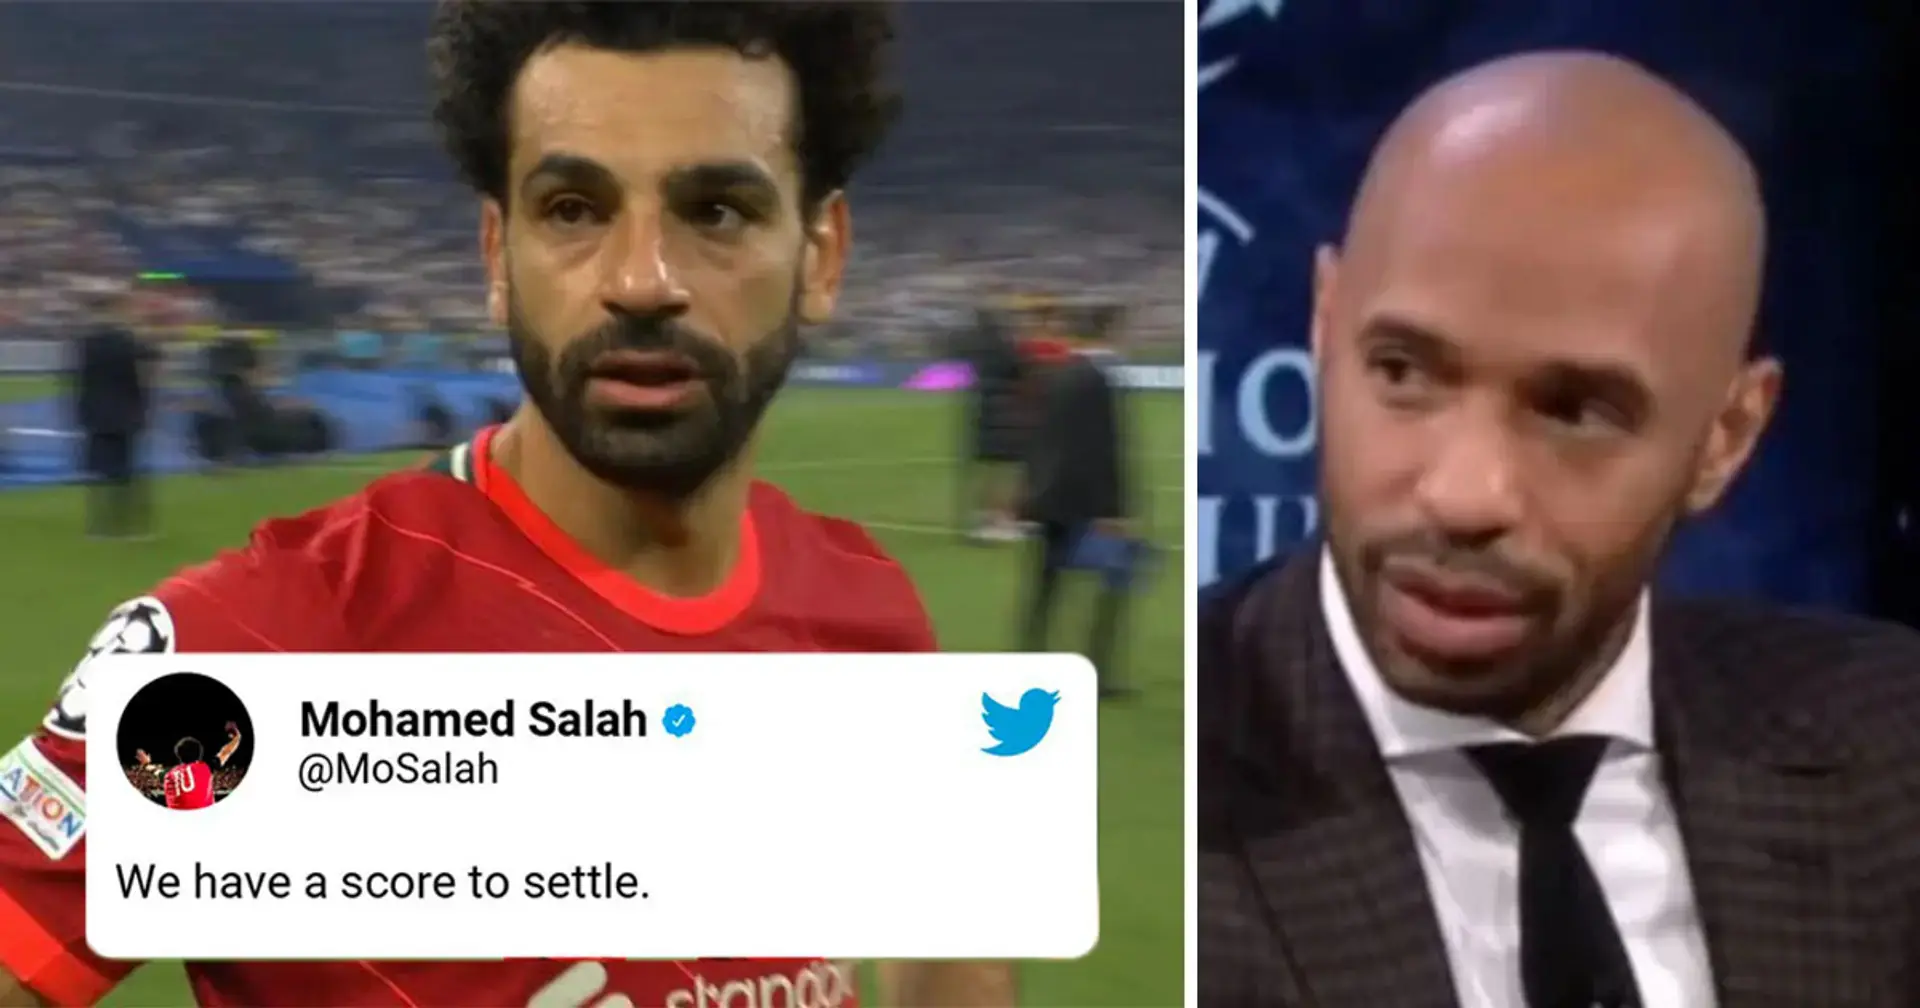 'No deberías haber dicho esas cosas': Henry critica a Salah por afirmaciones de 'tiempo de venganza' 